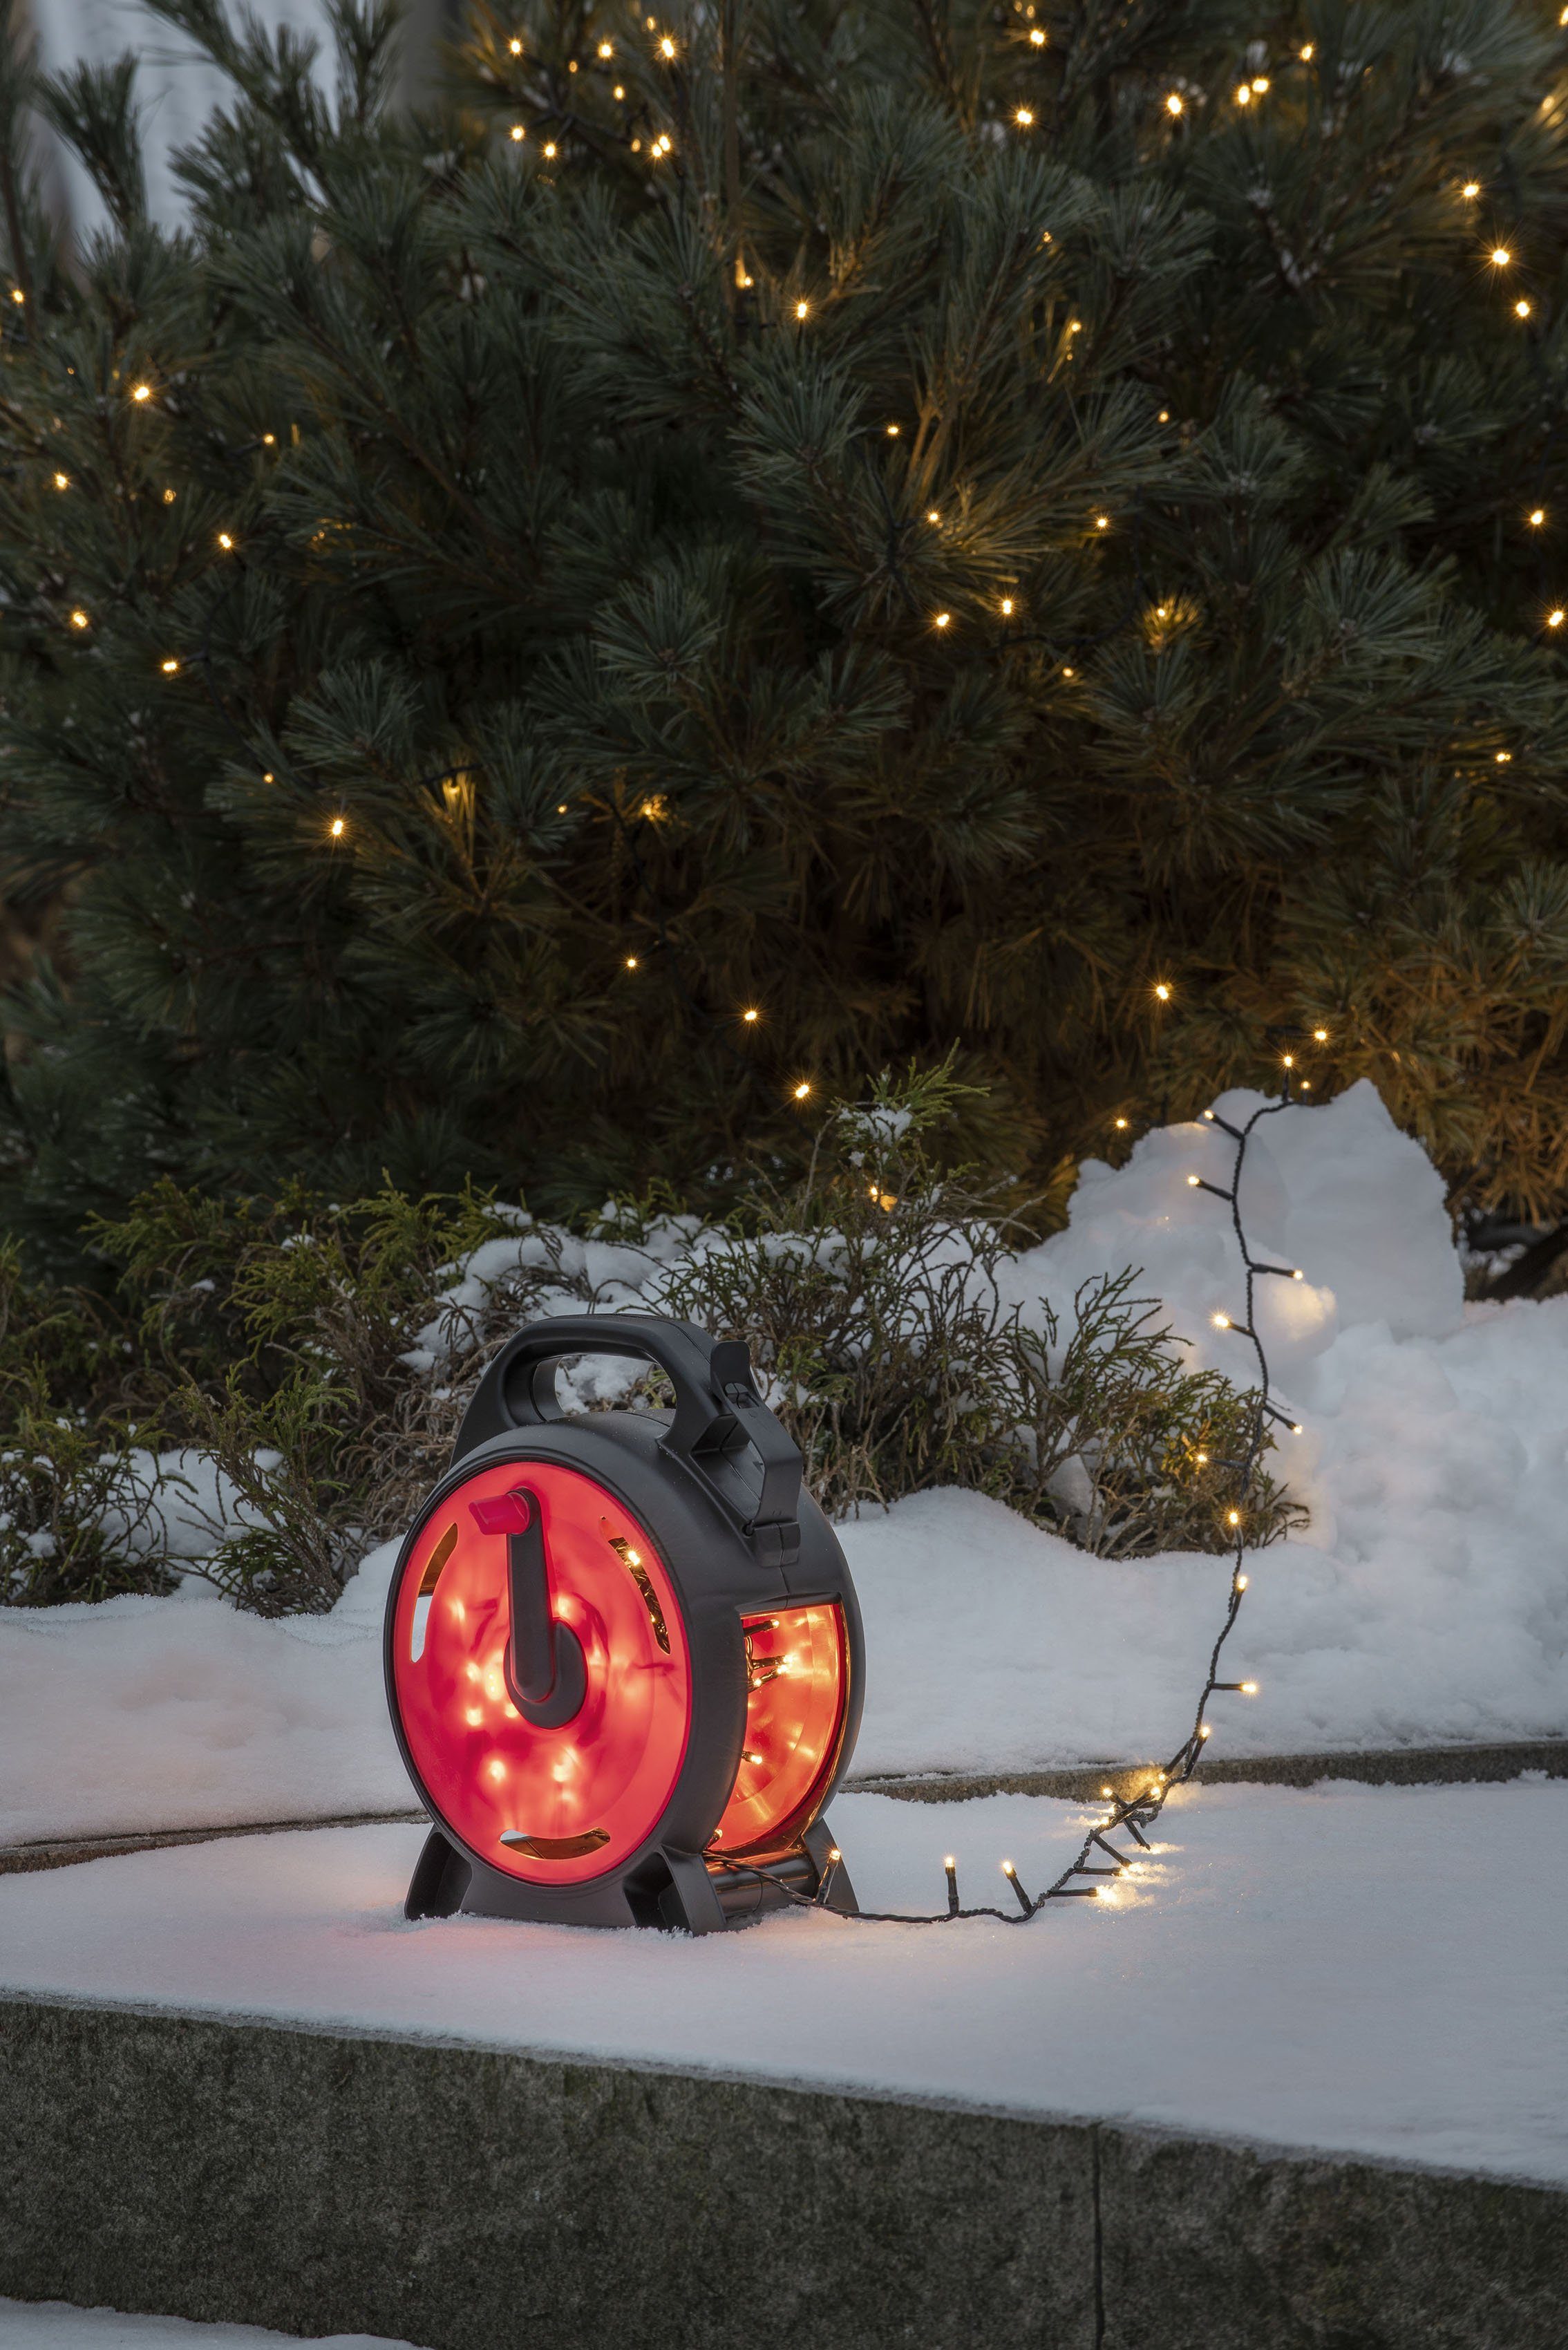 KONSTSMIDE LED-Lichterkette Weihnachtsdeko aussen, 600-flammig, Micro LEDs mit Kabelaufroller, schwarz-rot, 600 warm weiße Dioden